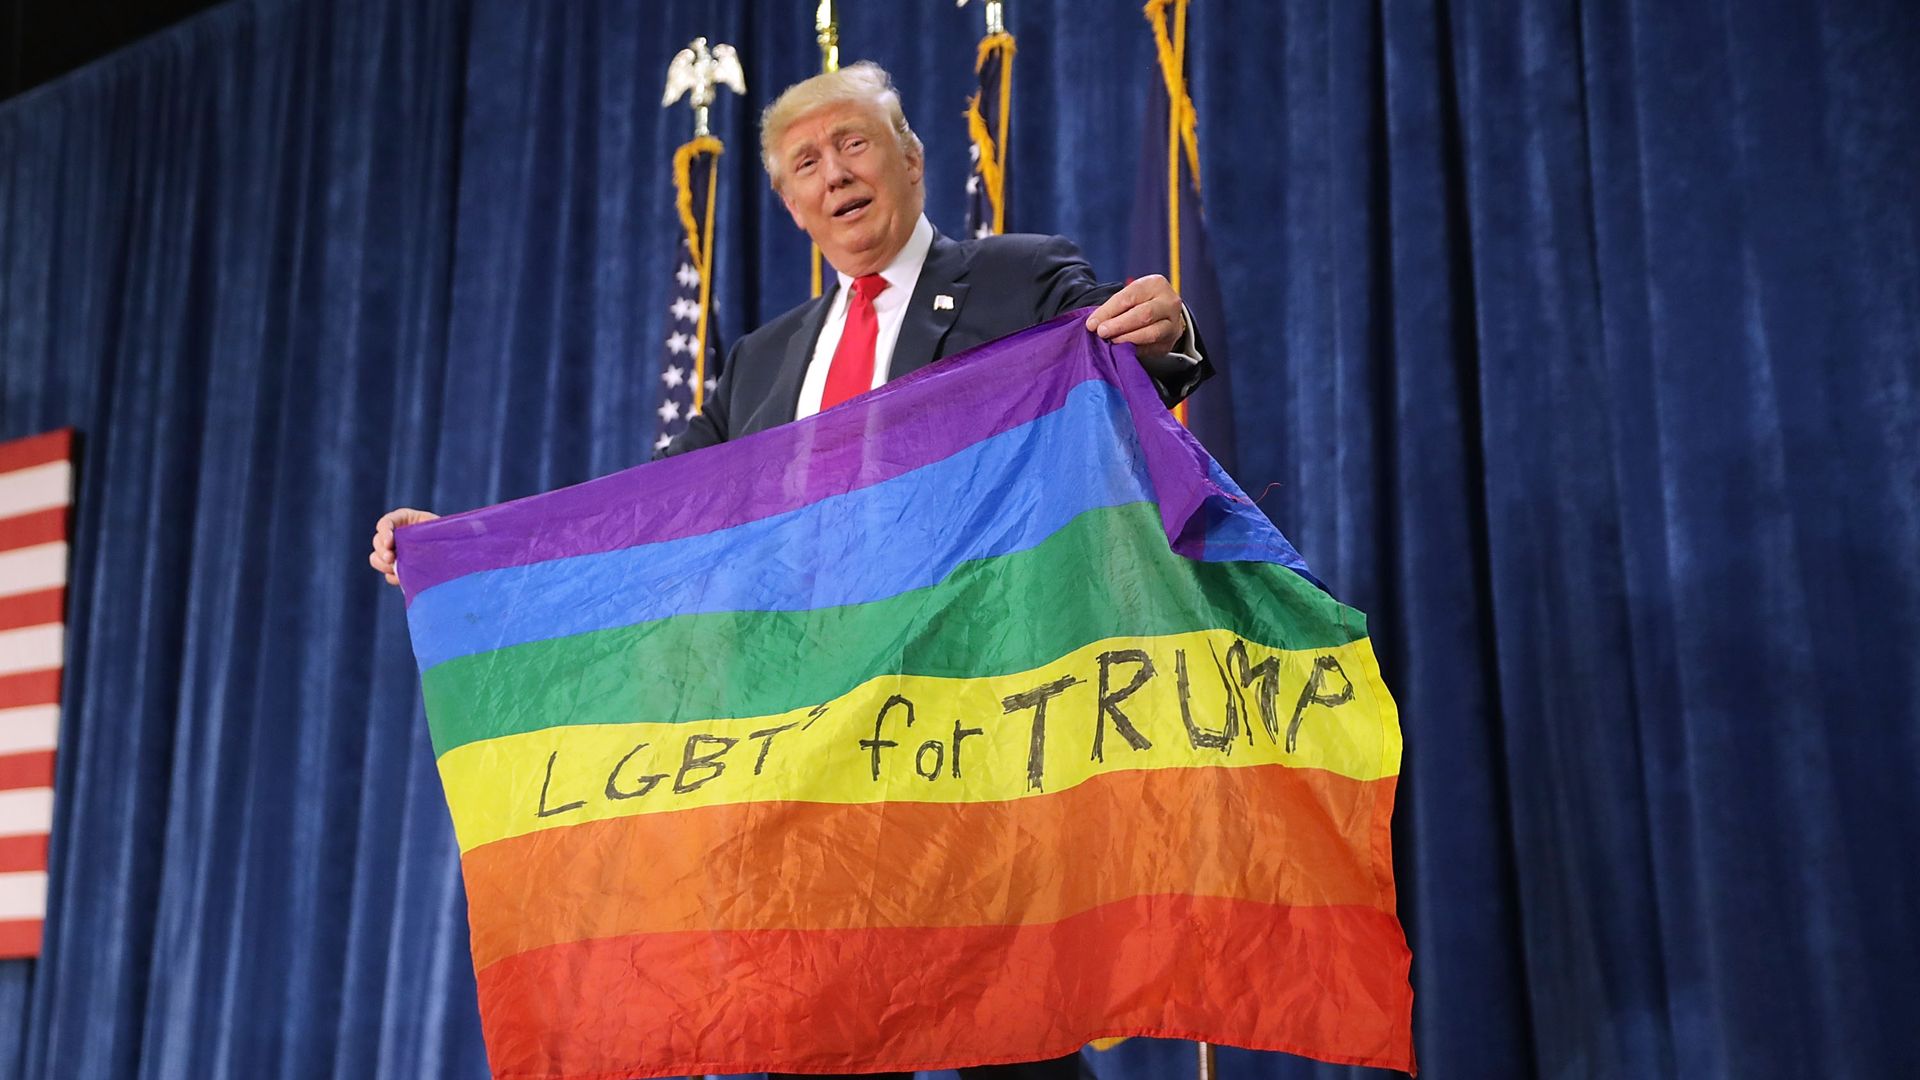 Trump with an LGBT flag